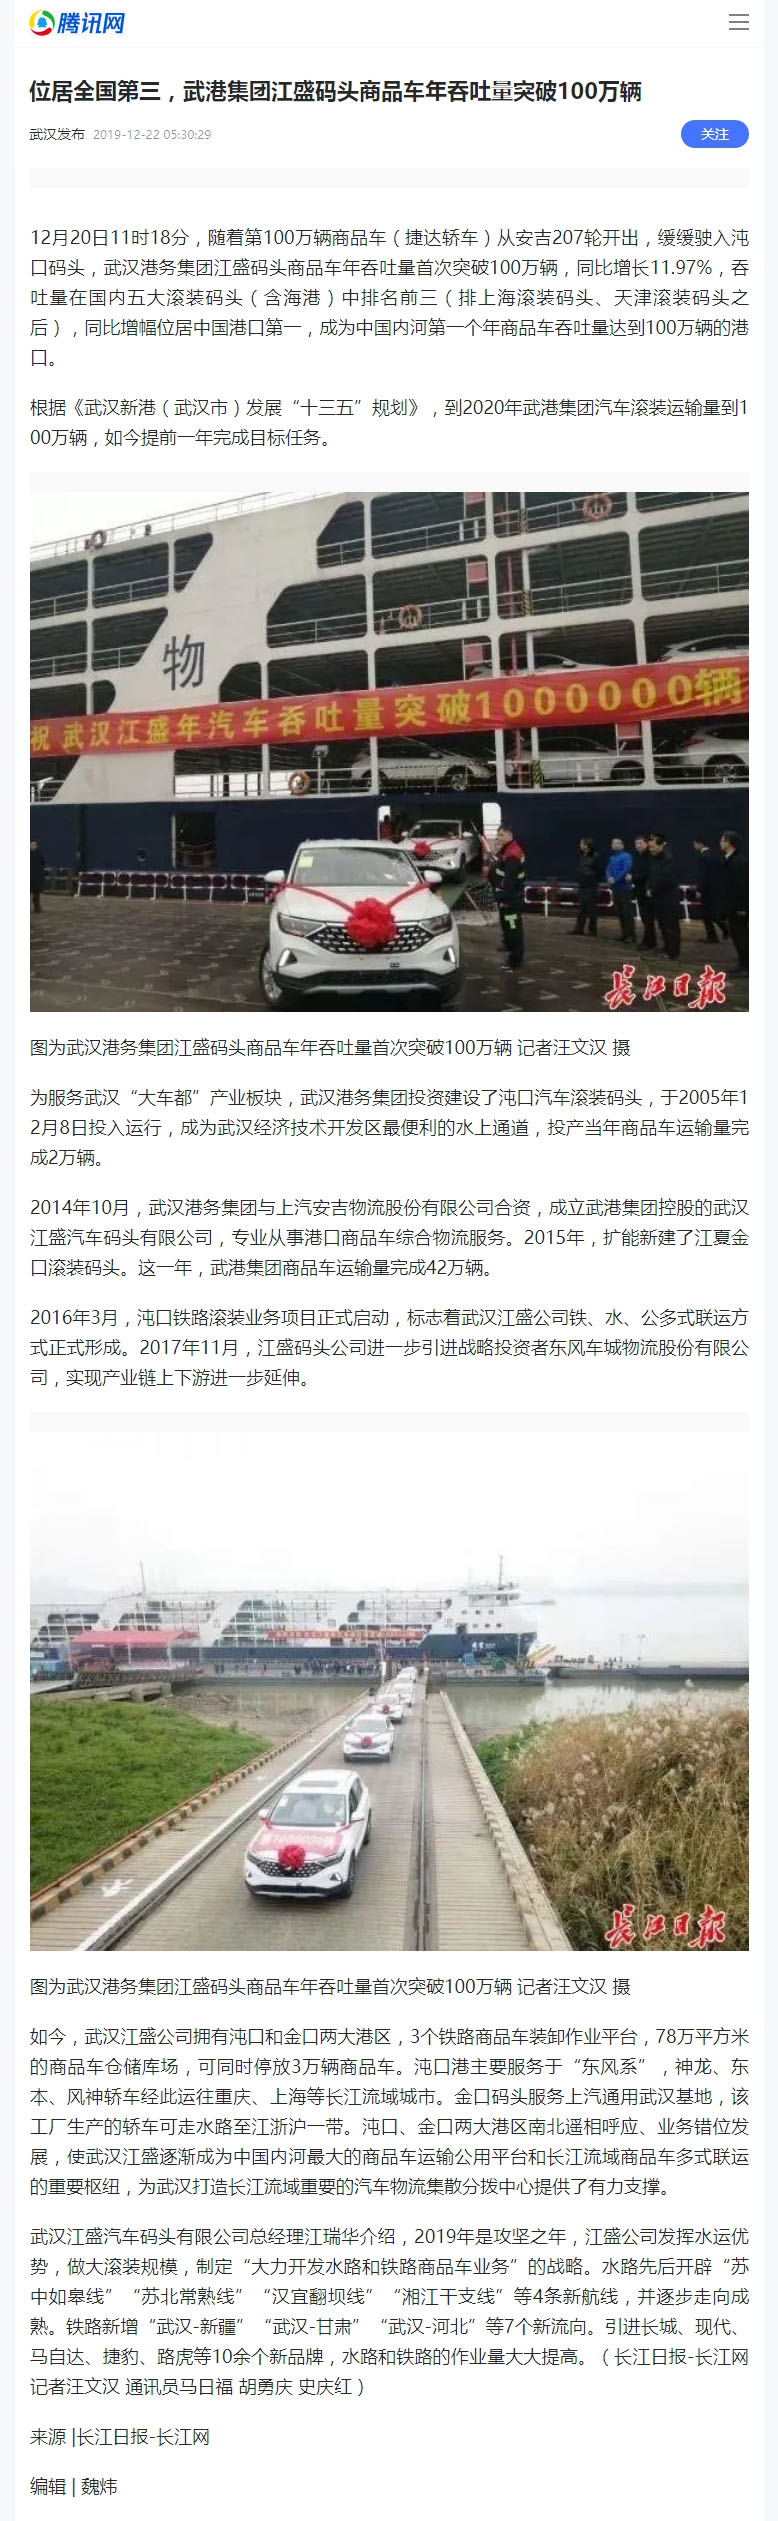 16位居全国第三，武港集团江盛码头商品车年吞吐量突破100万辆.jpg